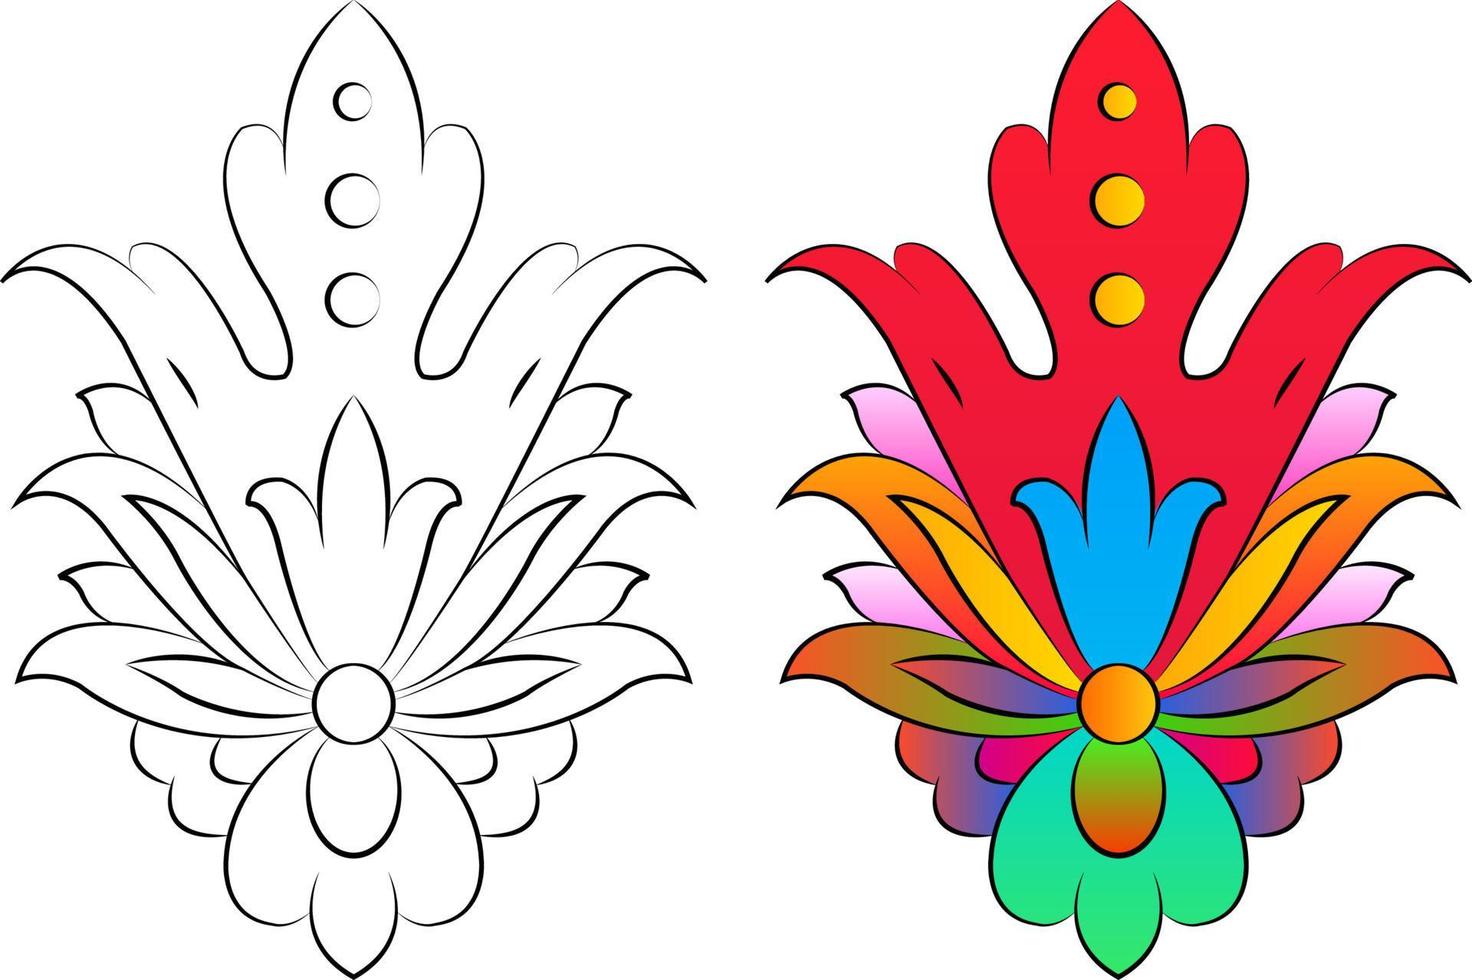 broderie. éléments de design brodés avec des fleurs et des feuilles de style vintage sur fond blanc. illustration vectorielle stock vecteur